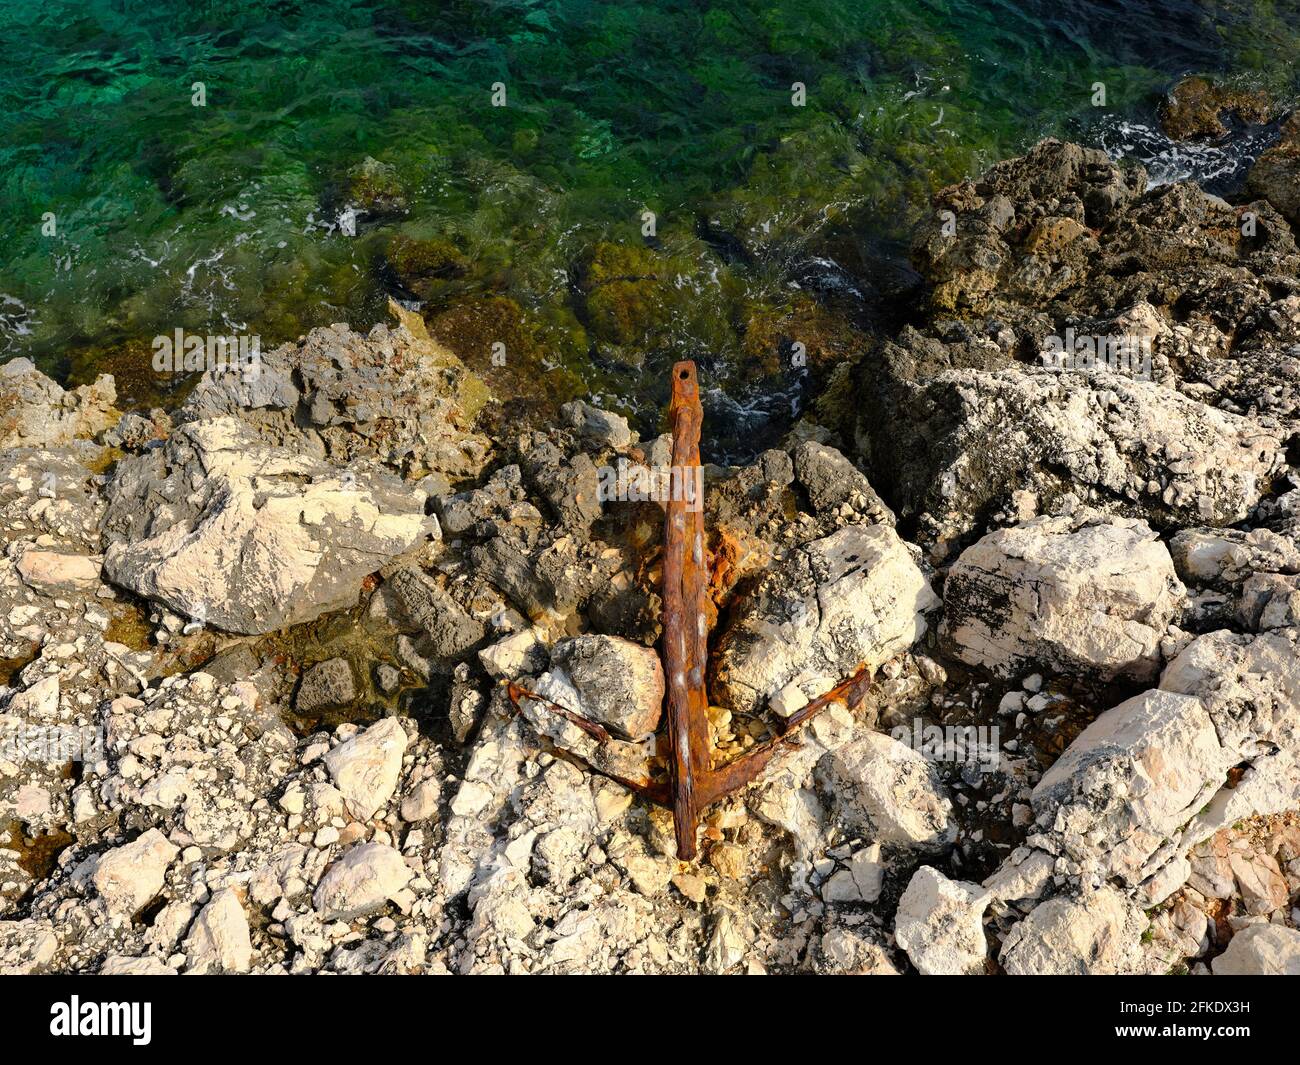 VERTIKALE LUFTAUFNAHME mit einem 6 Meter hohen Mast. Verrostete Anker eingebettet in eine Kalksteinküste. Nizza, Französische Riviera, Alpes-Maritimes, Frankreich. Stockfoto